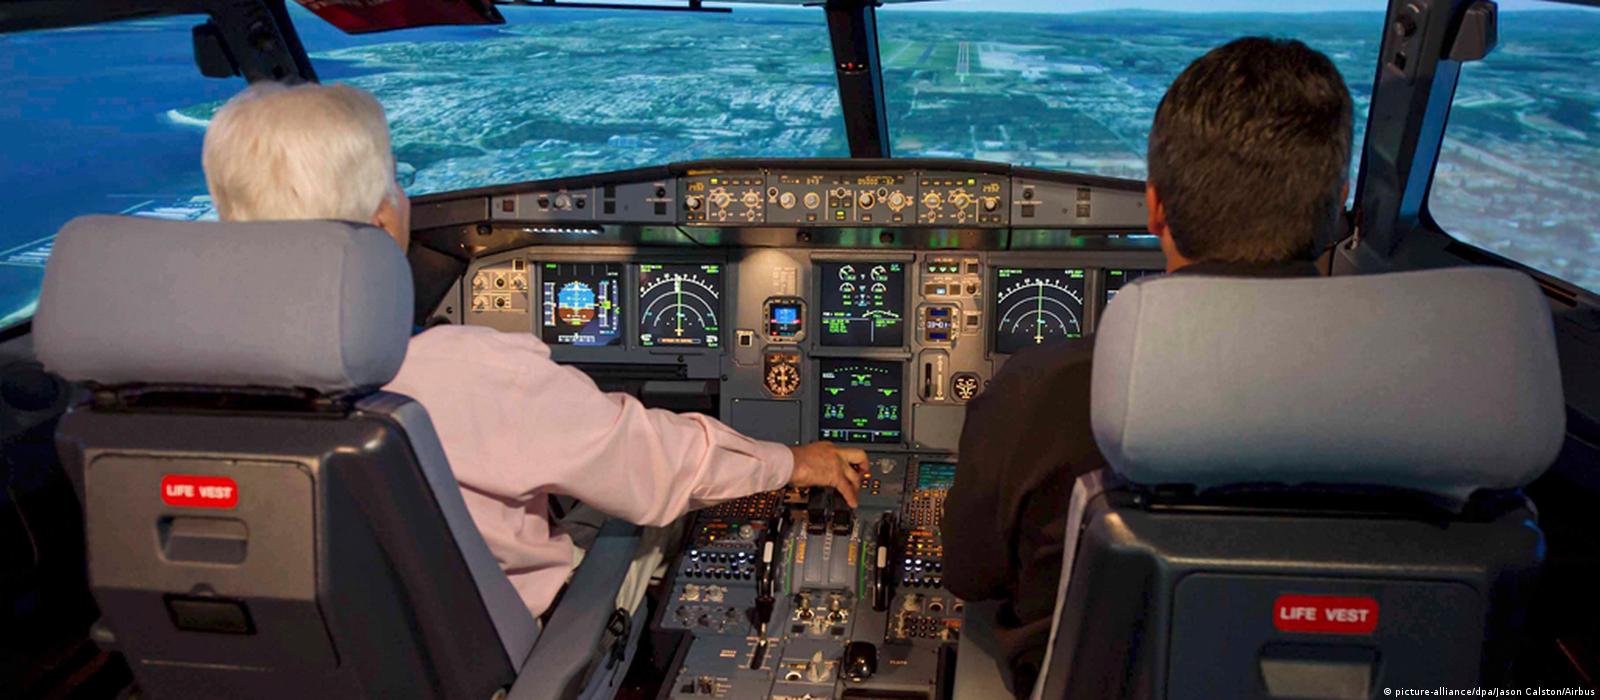 Aeroplane Mode, o simulador de voo para passageiros - Airway